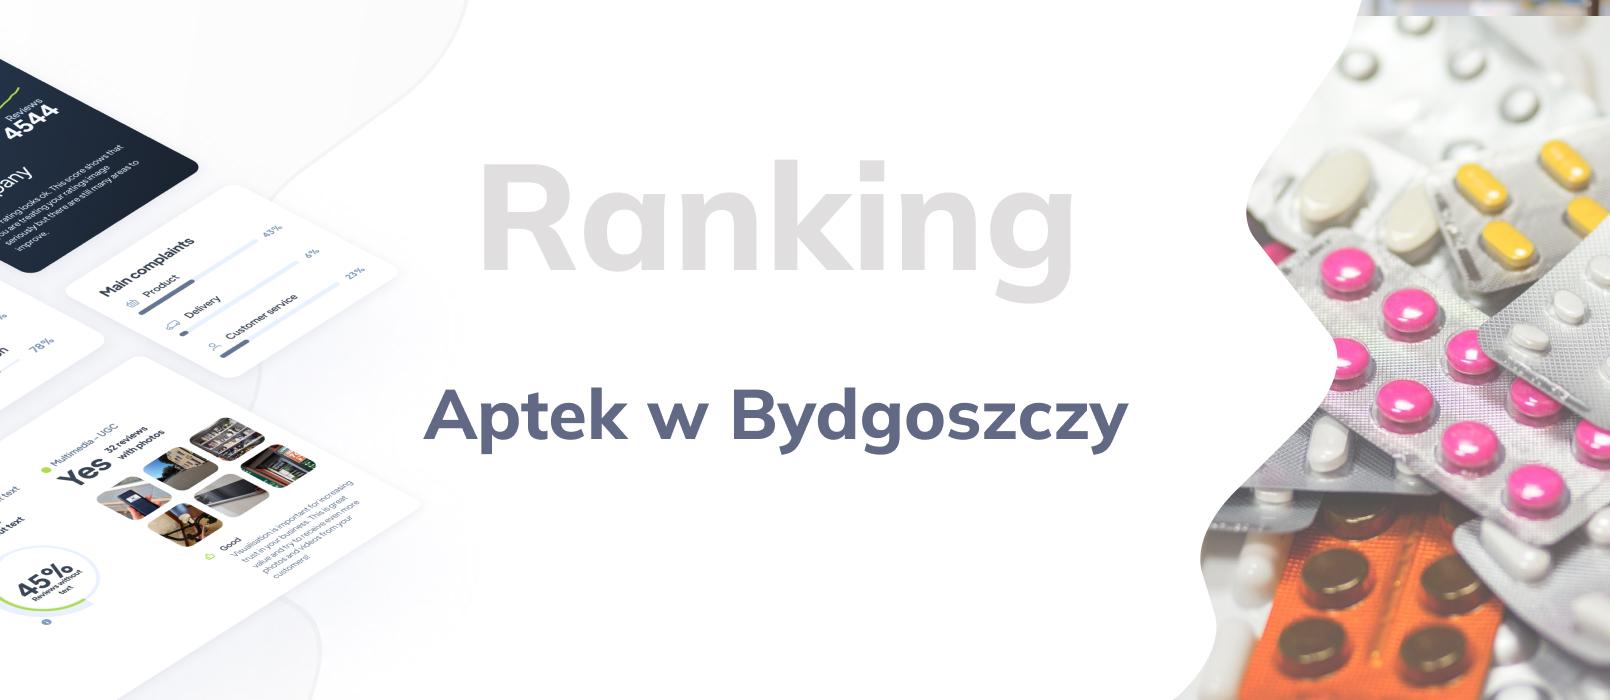 Apteki w Bydgoszczy - ranking TOP 10